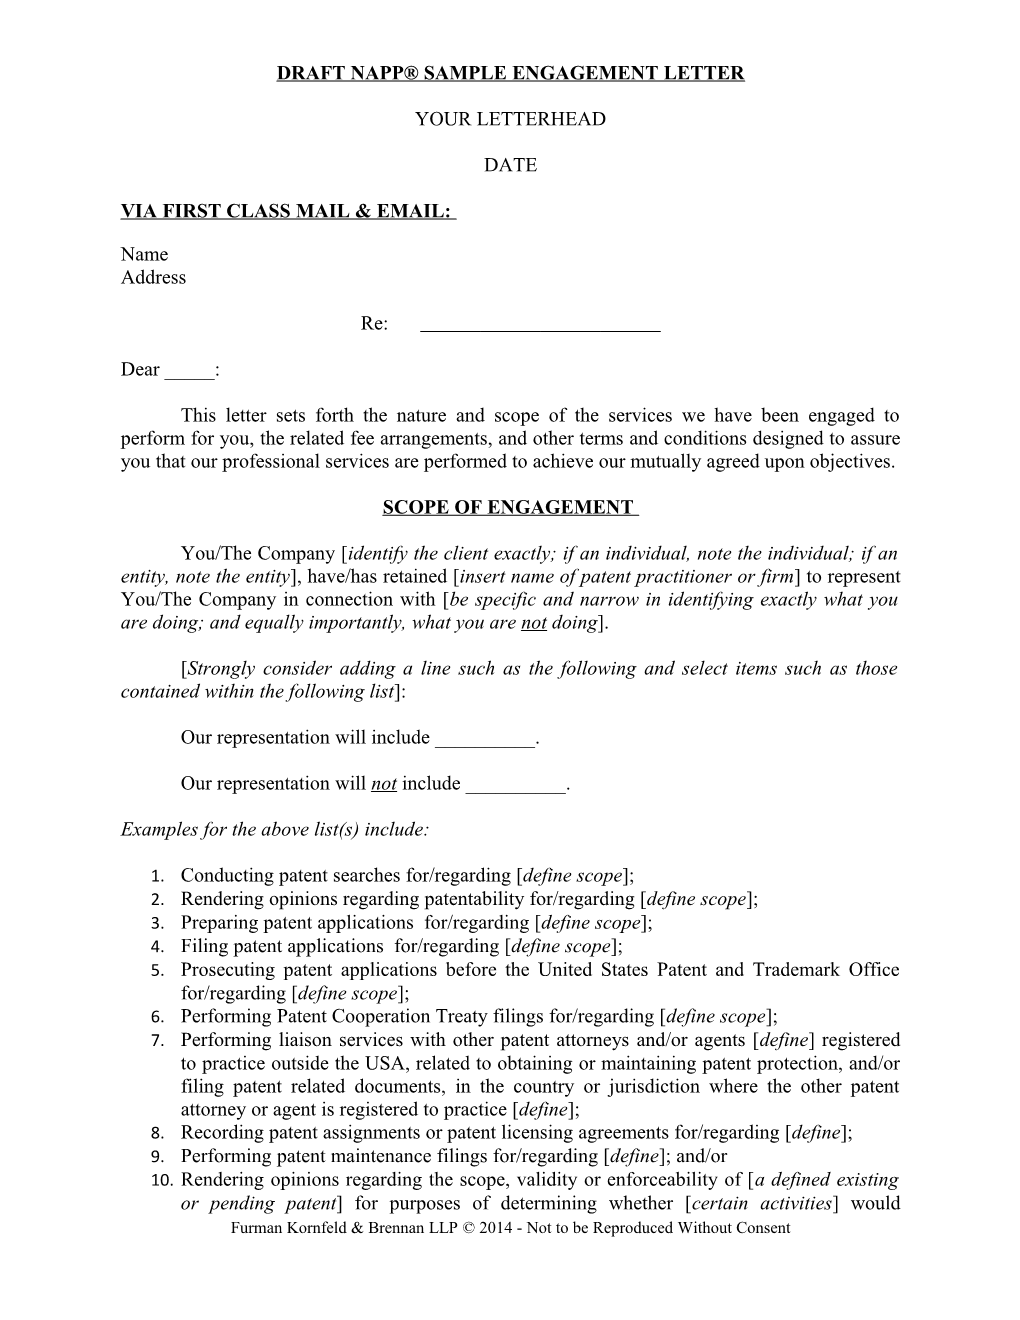 NAPP Sample Engagement Letter (00349489)